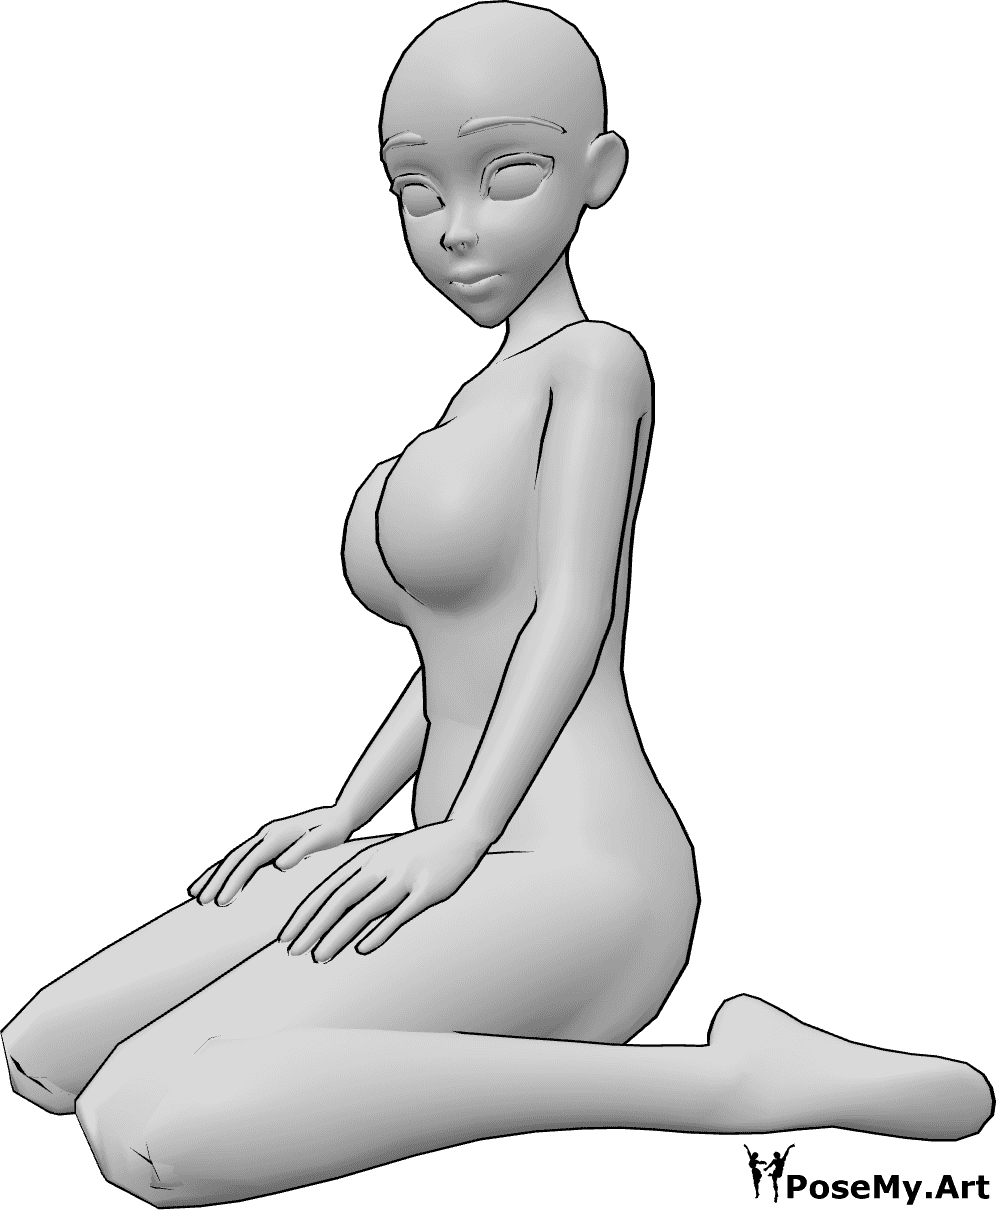 Riferimento alle pose- Anime in posa seduta - Una donna animata è seduta in una posa simpatica, inginocchiata e con lo sguardo rivolto a sinistra